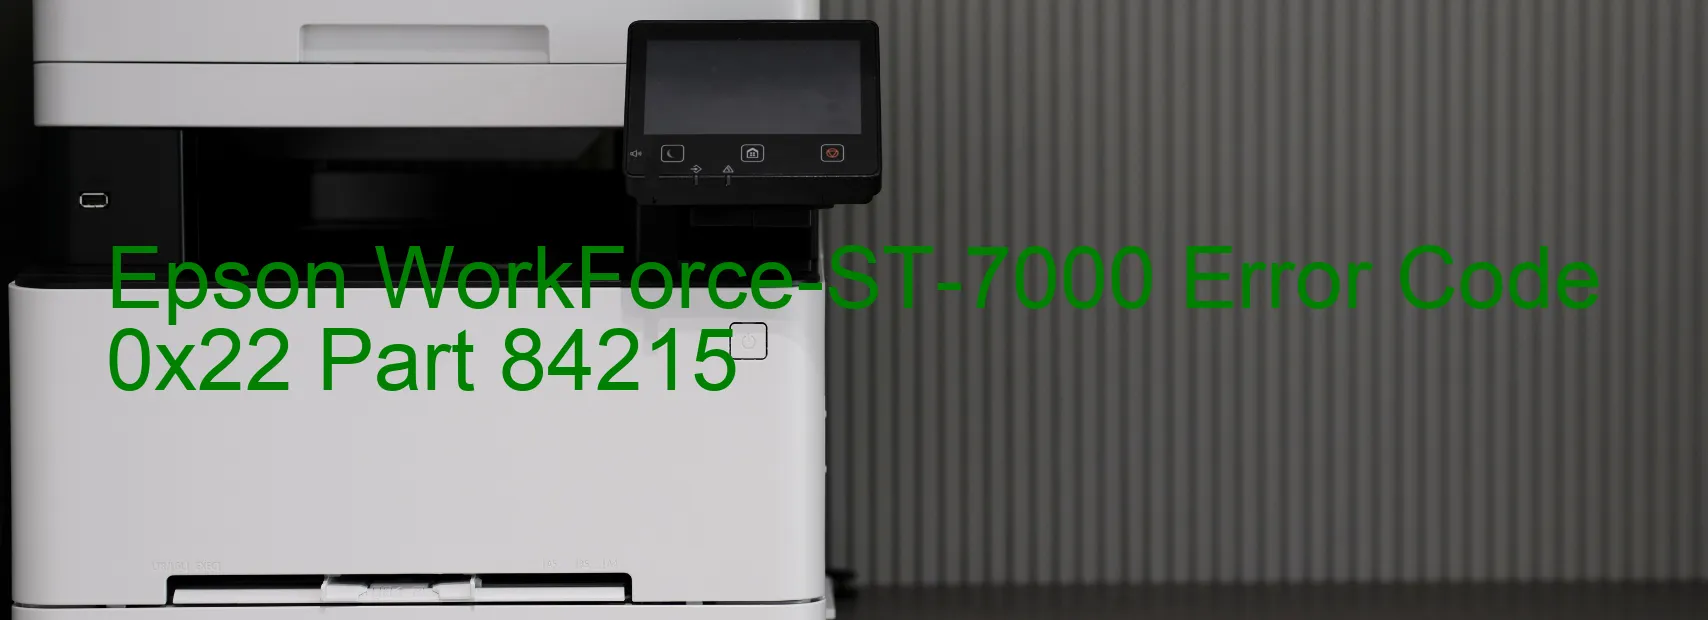 Epson WorkForce-ST-7000 Error Code 0x22 Part 84215